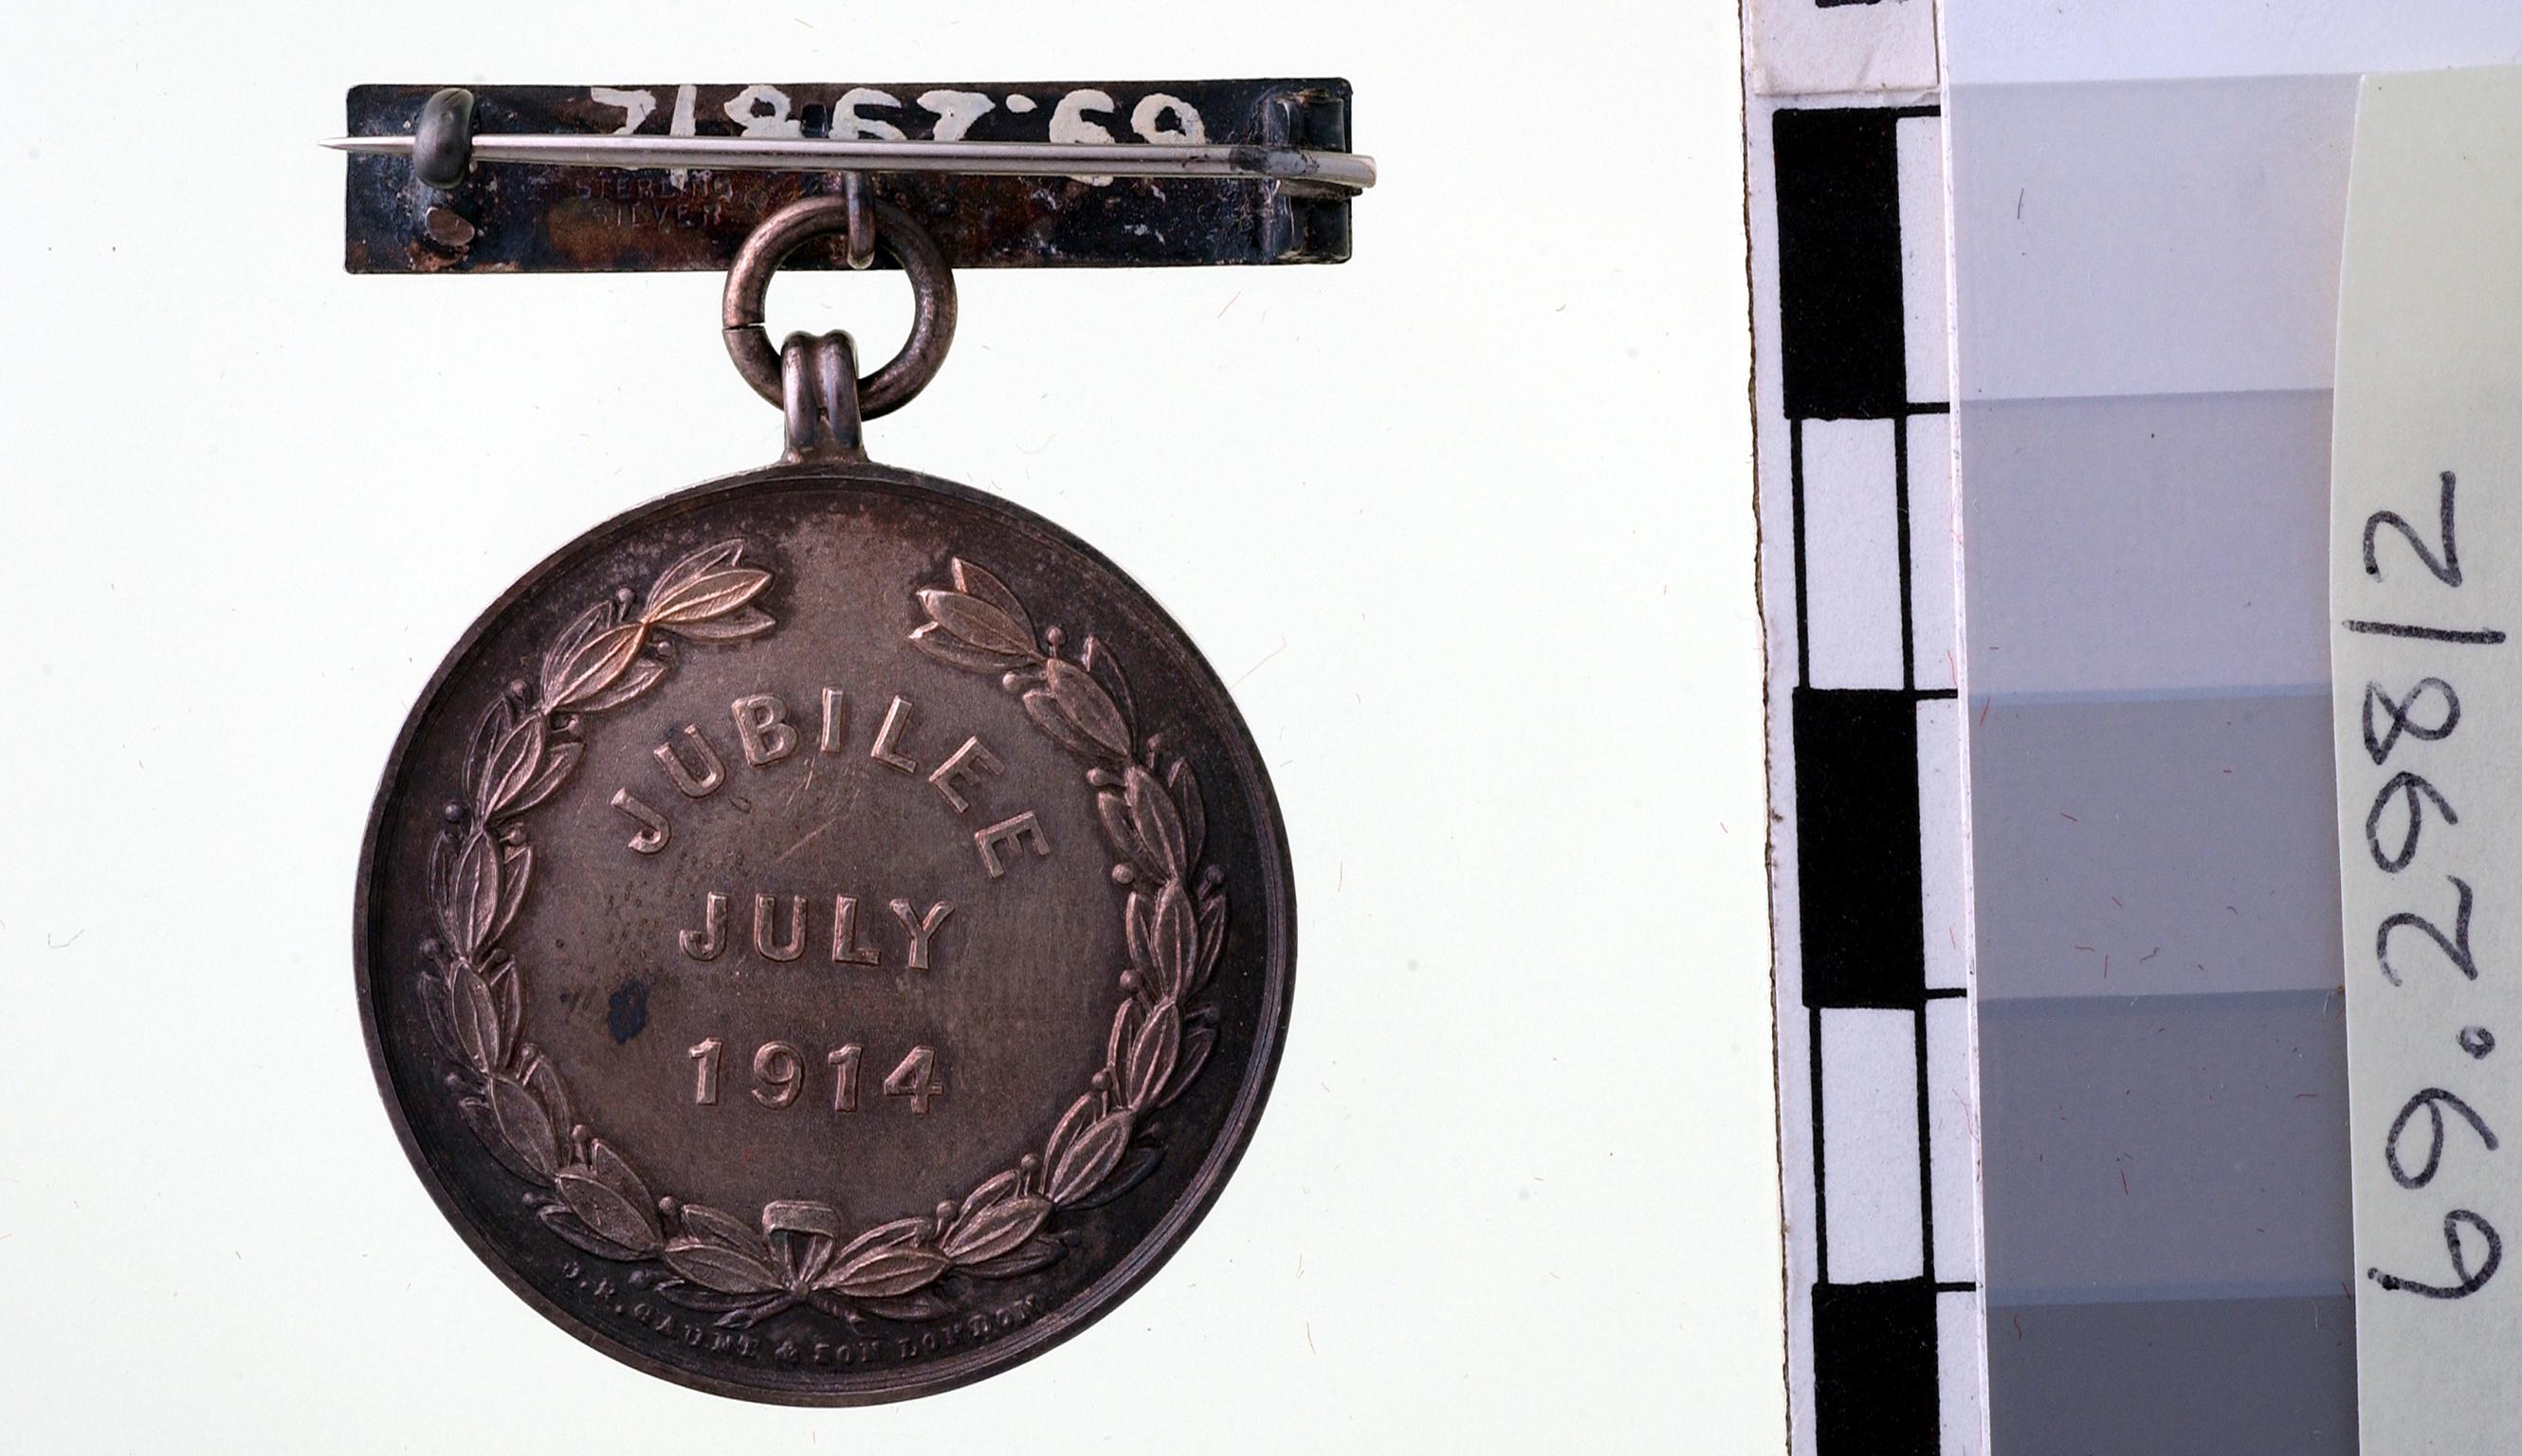 Powell Duffryn Steam Coal Co. Jubilee medal, 1914